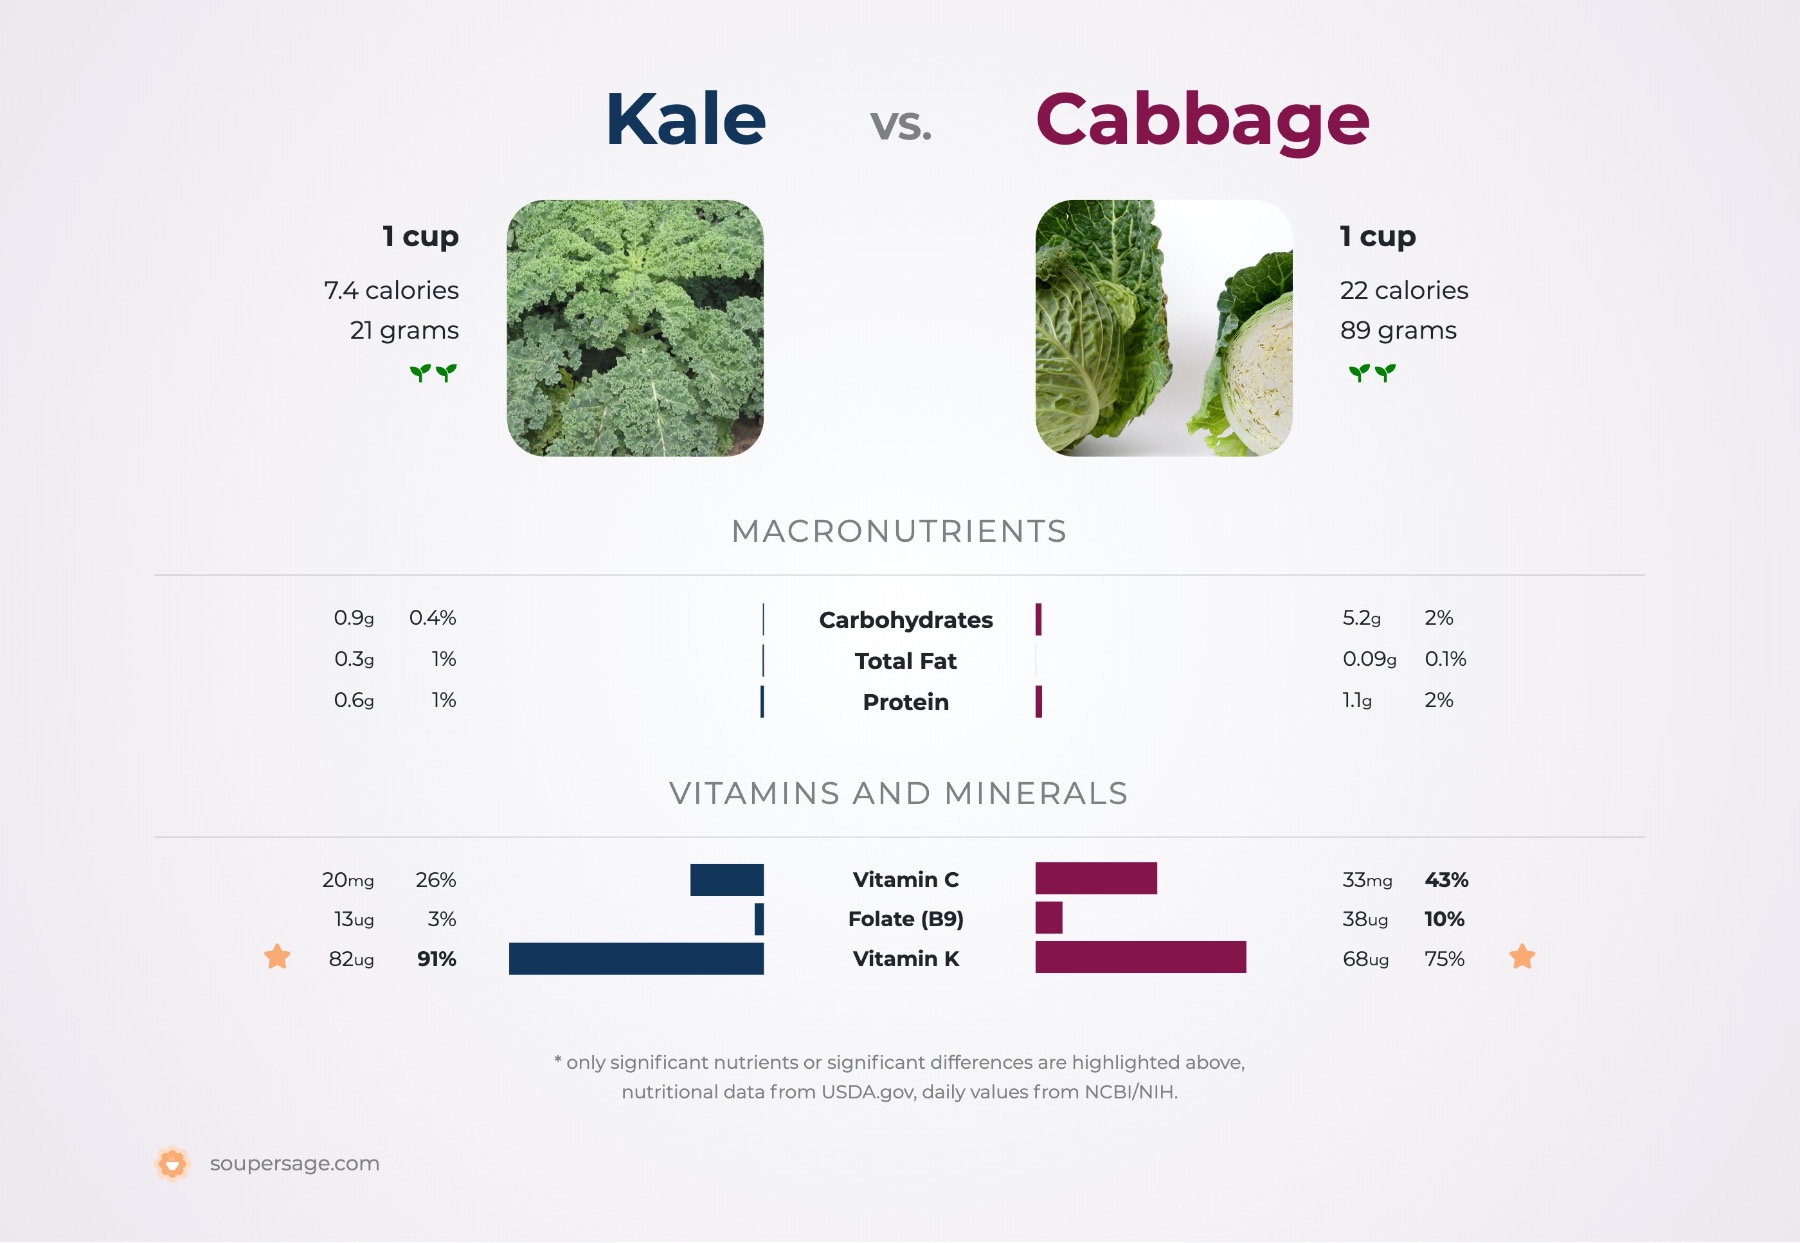 nutrition comparison of cabbage vs. kale